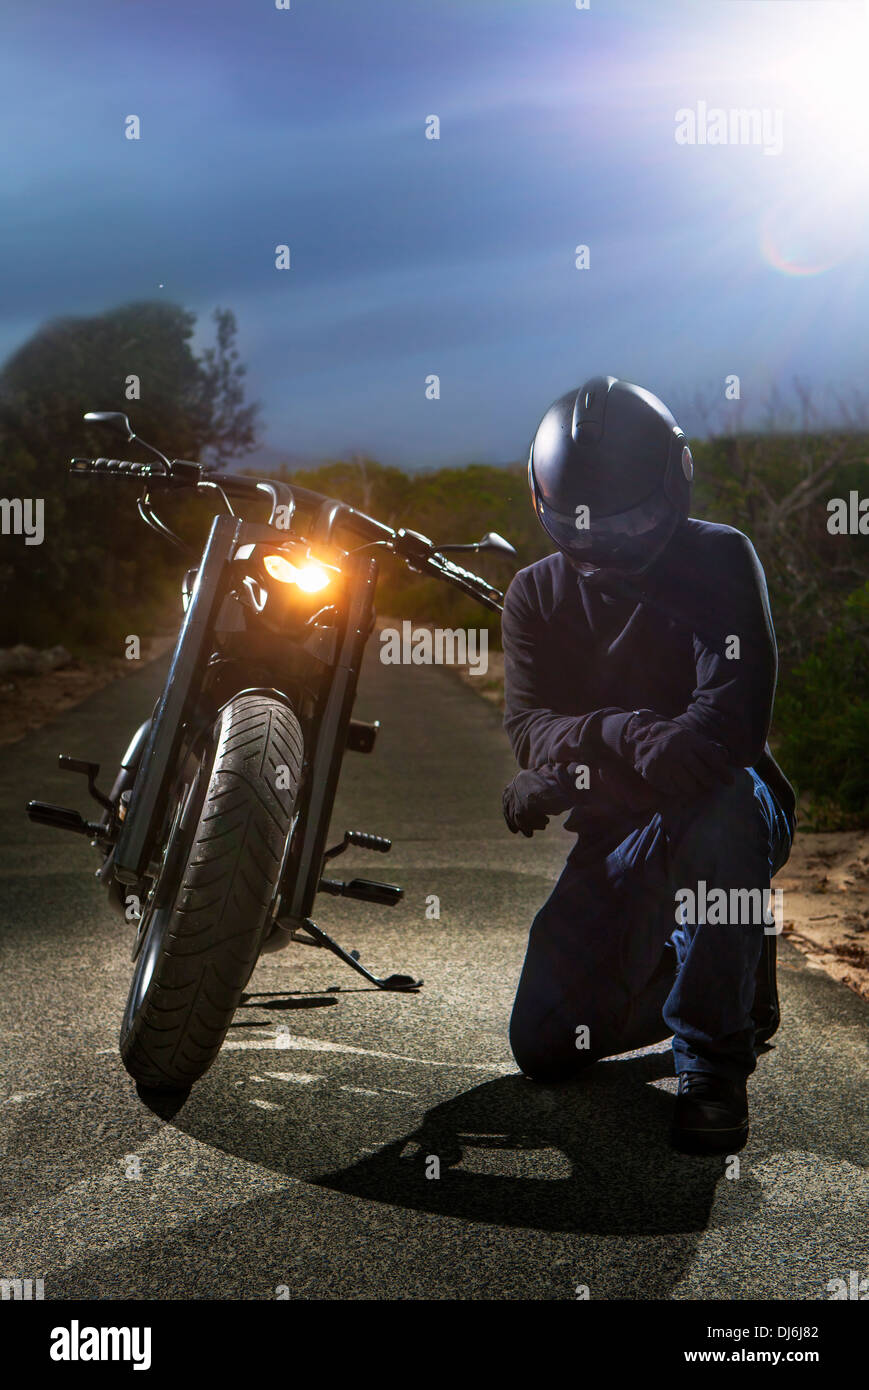 Jawa Motorcycles on X: 